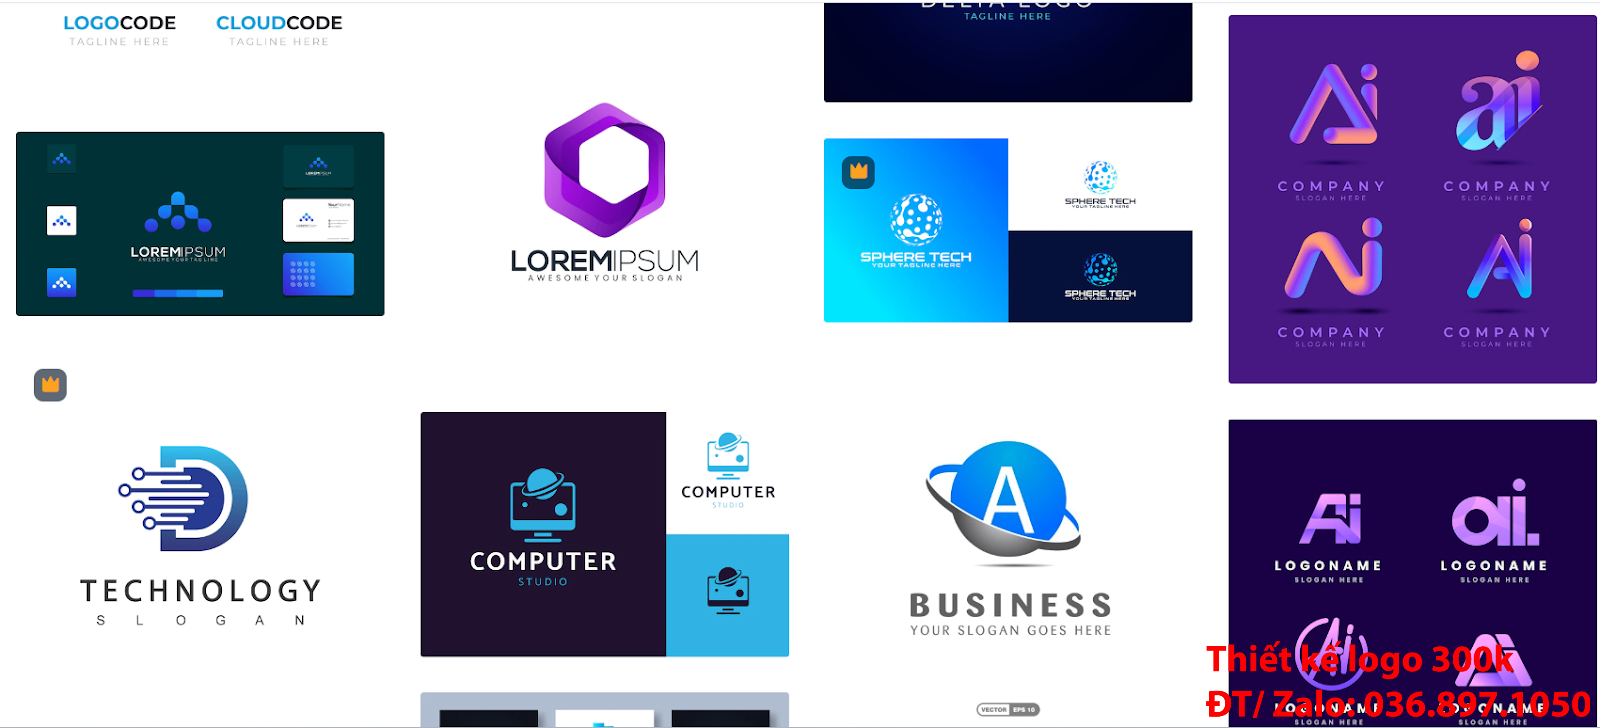 Tại Hà Nội có dịch vụ nhận thiết kế online các thiết kế logo đẹp công ty công nghệ sáng tạo